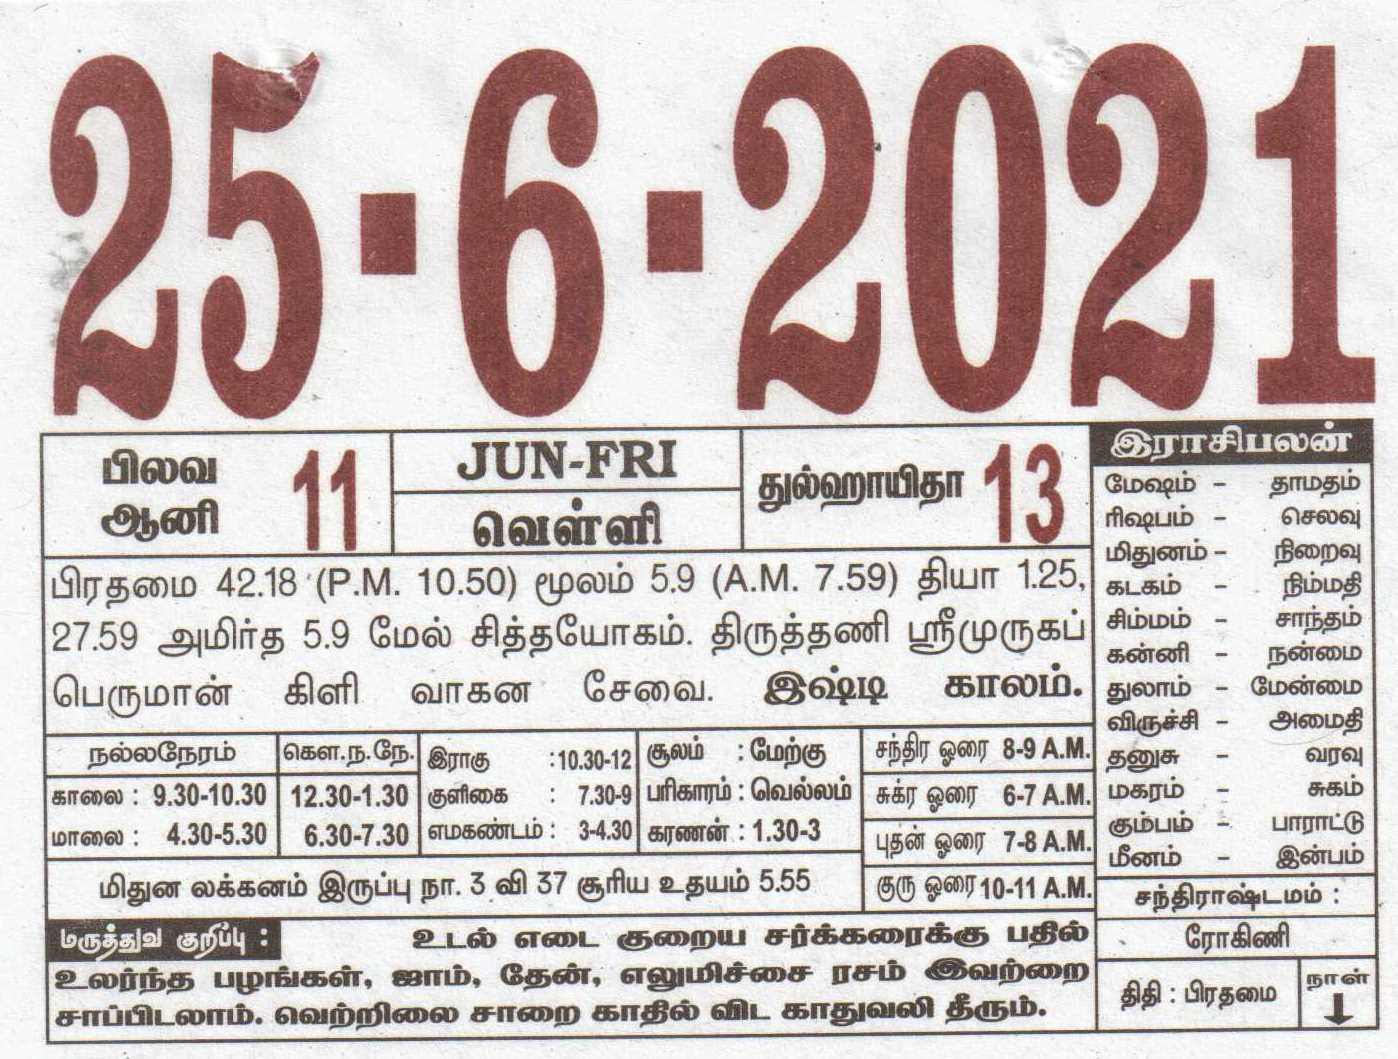 Tamil Daily Calendar 25062021 Date 25 , January daily Tear off